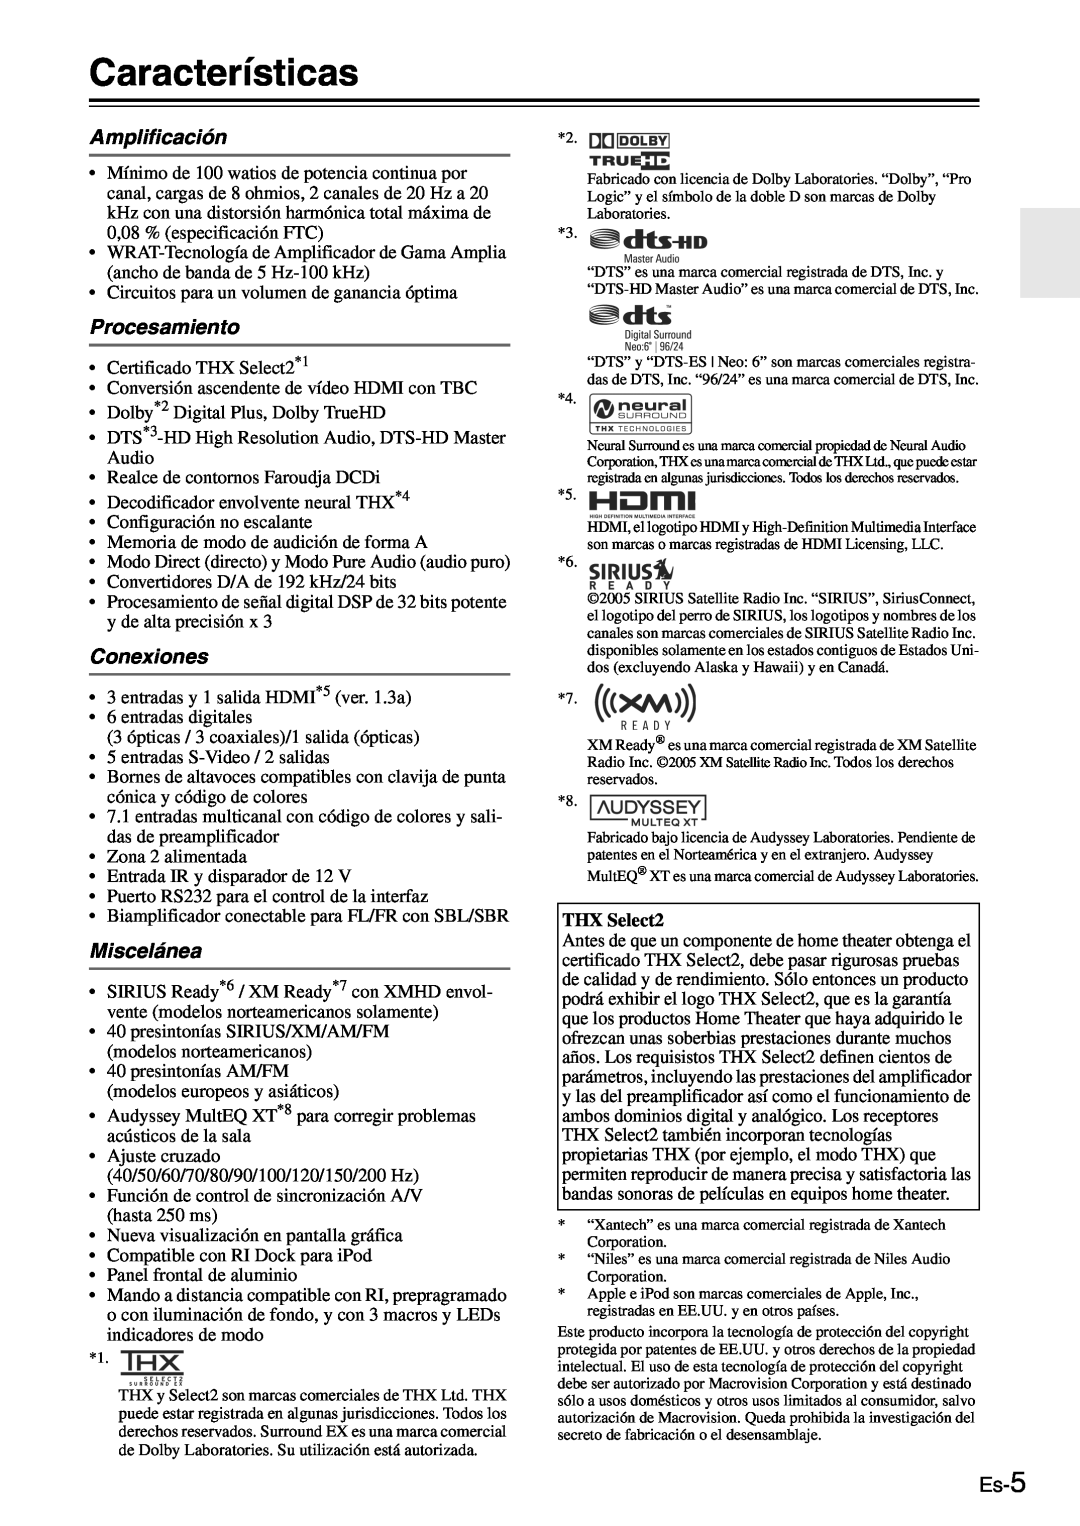 Onkyo TX-SR705 manual Características, Amplificación, Procesamiento, Conexiones, Miscelánea, Es-5, THX Select2 